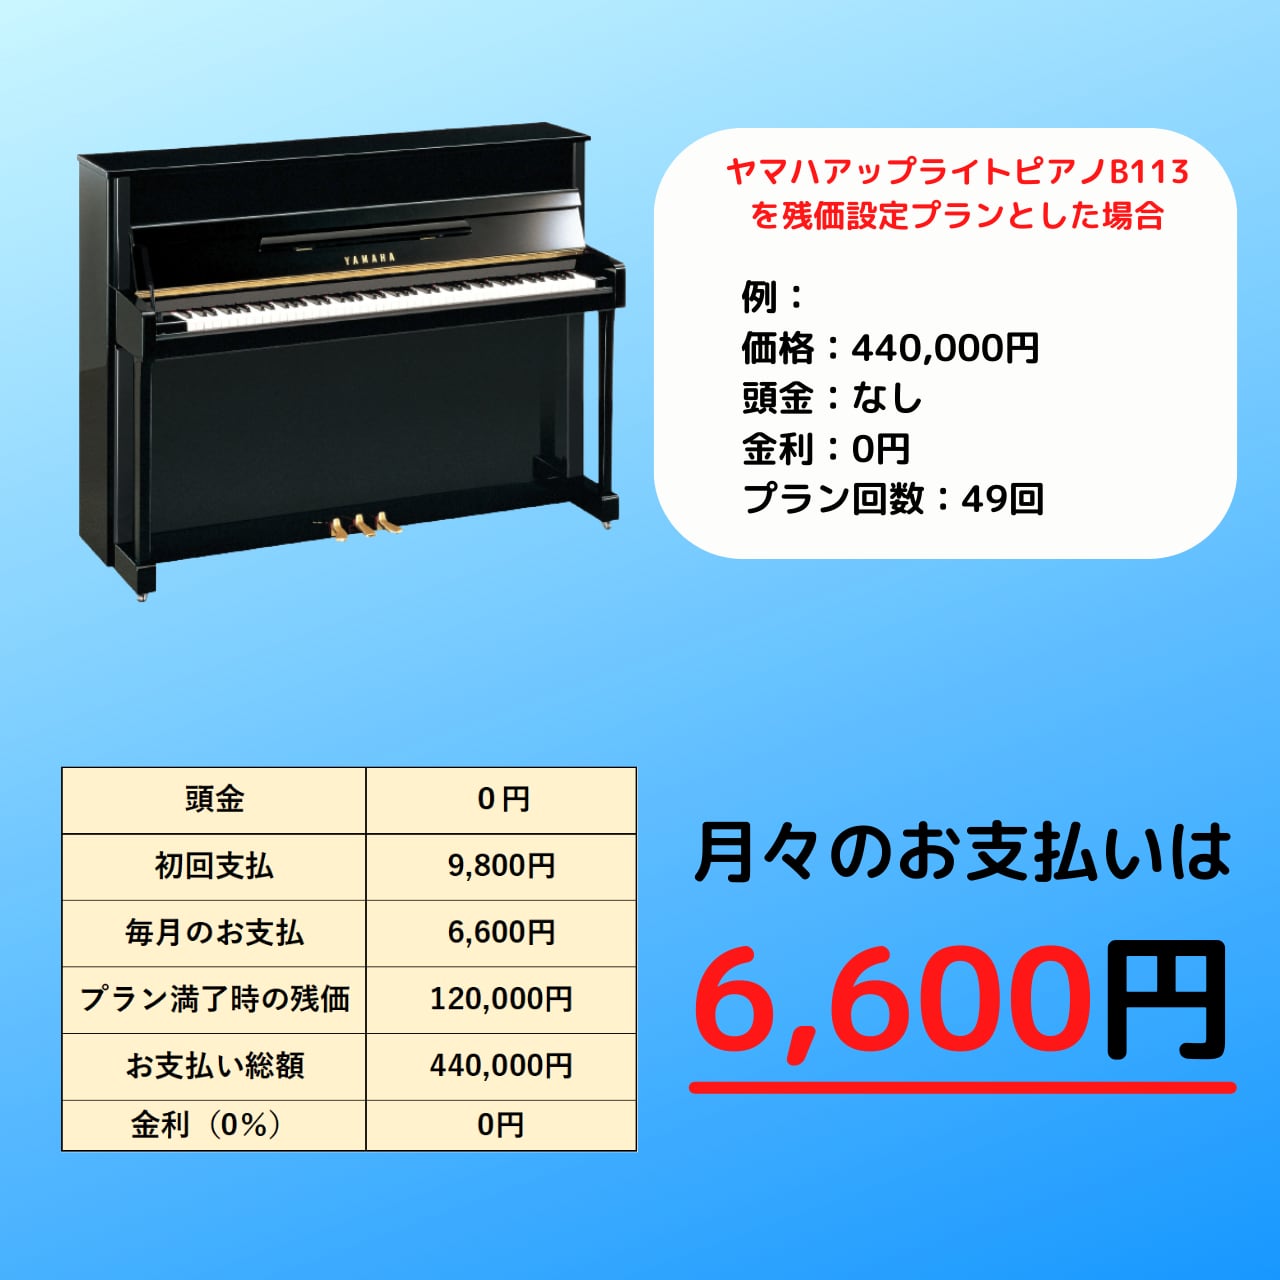 金利なしアコースティックピアノ限定残価設定クレジットについて